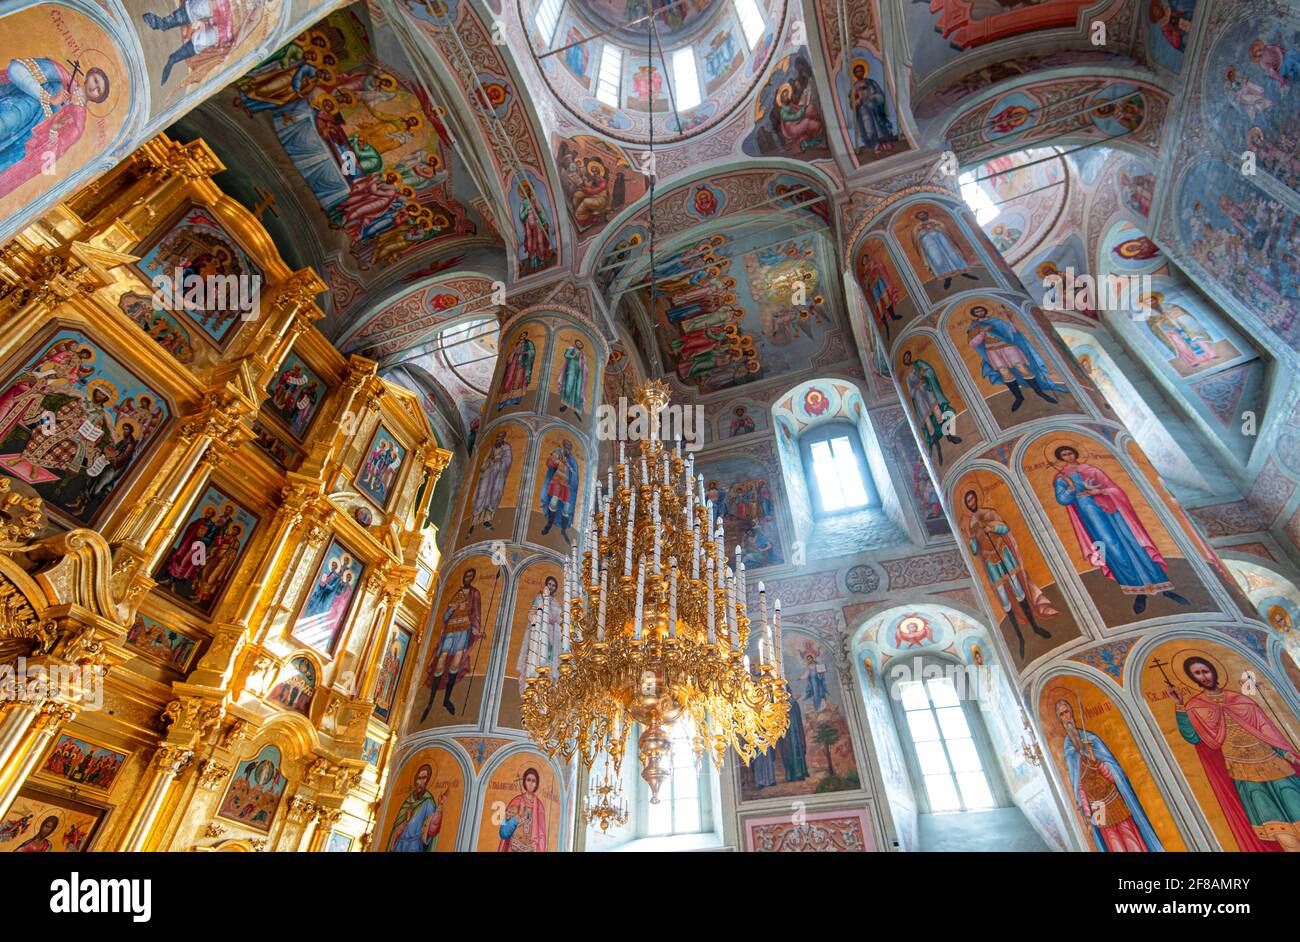 KOLOMNA - APR 11: Intérieur avec iconostase, icônes, et modèle traditionnel russe dans l'église orthodoxe de Kolomna, avril 11. 2021 en Russie Banque D'Images